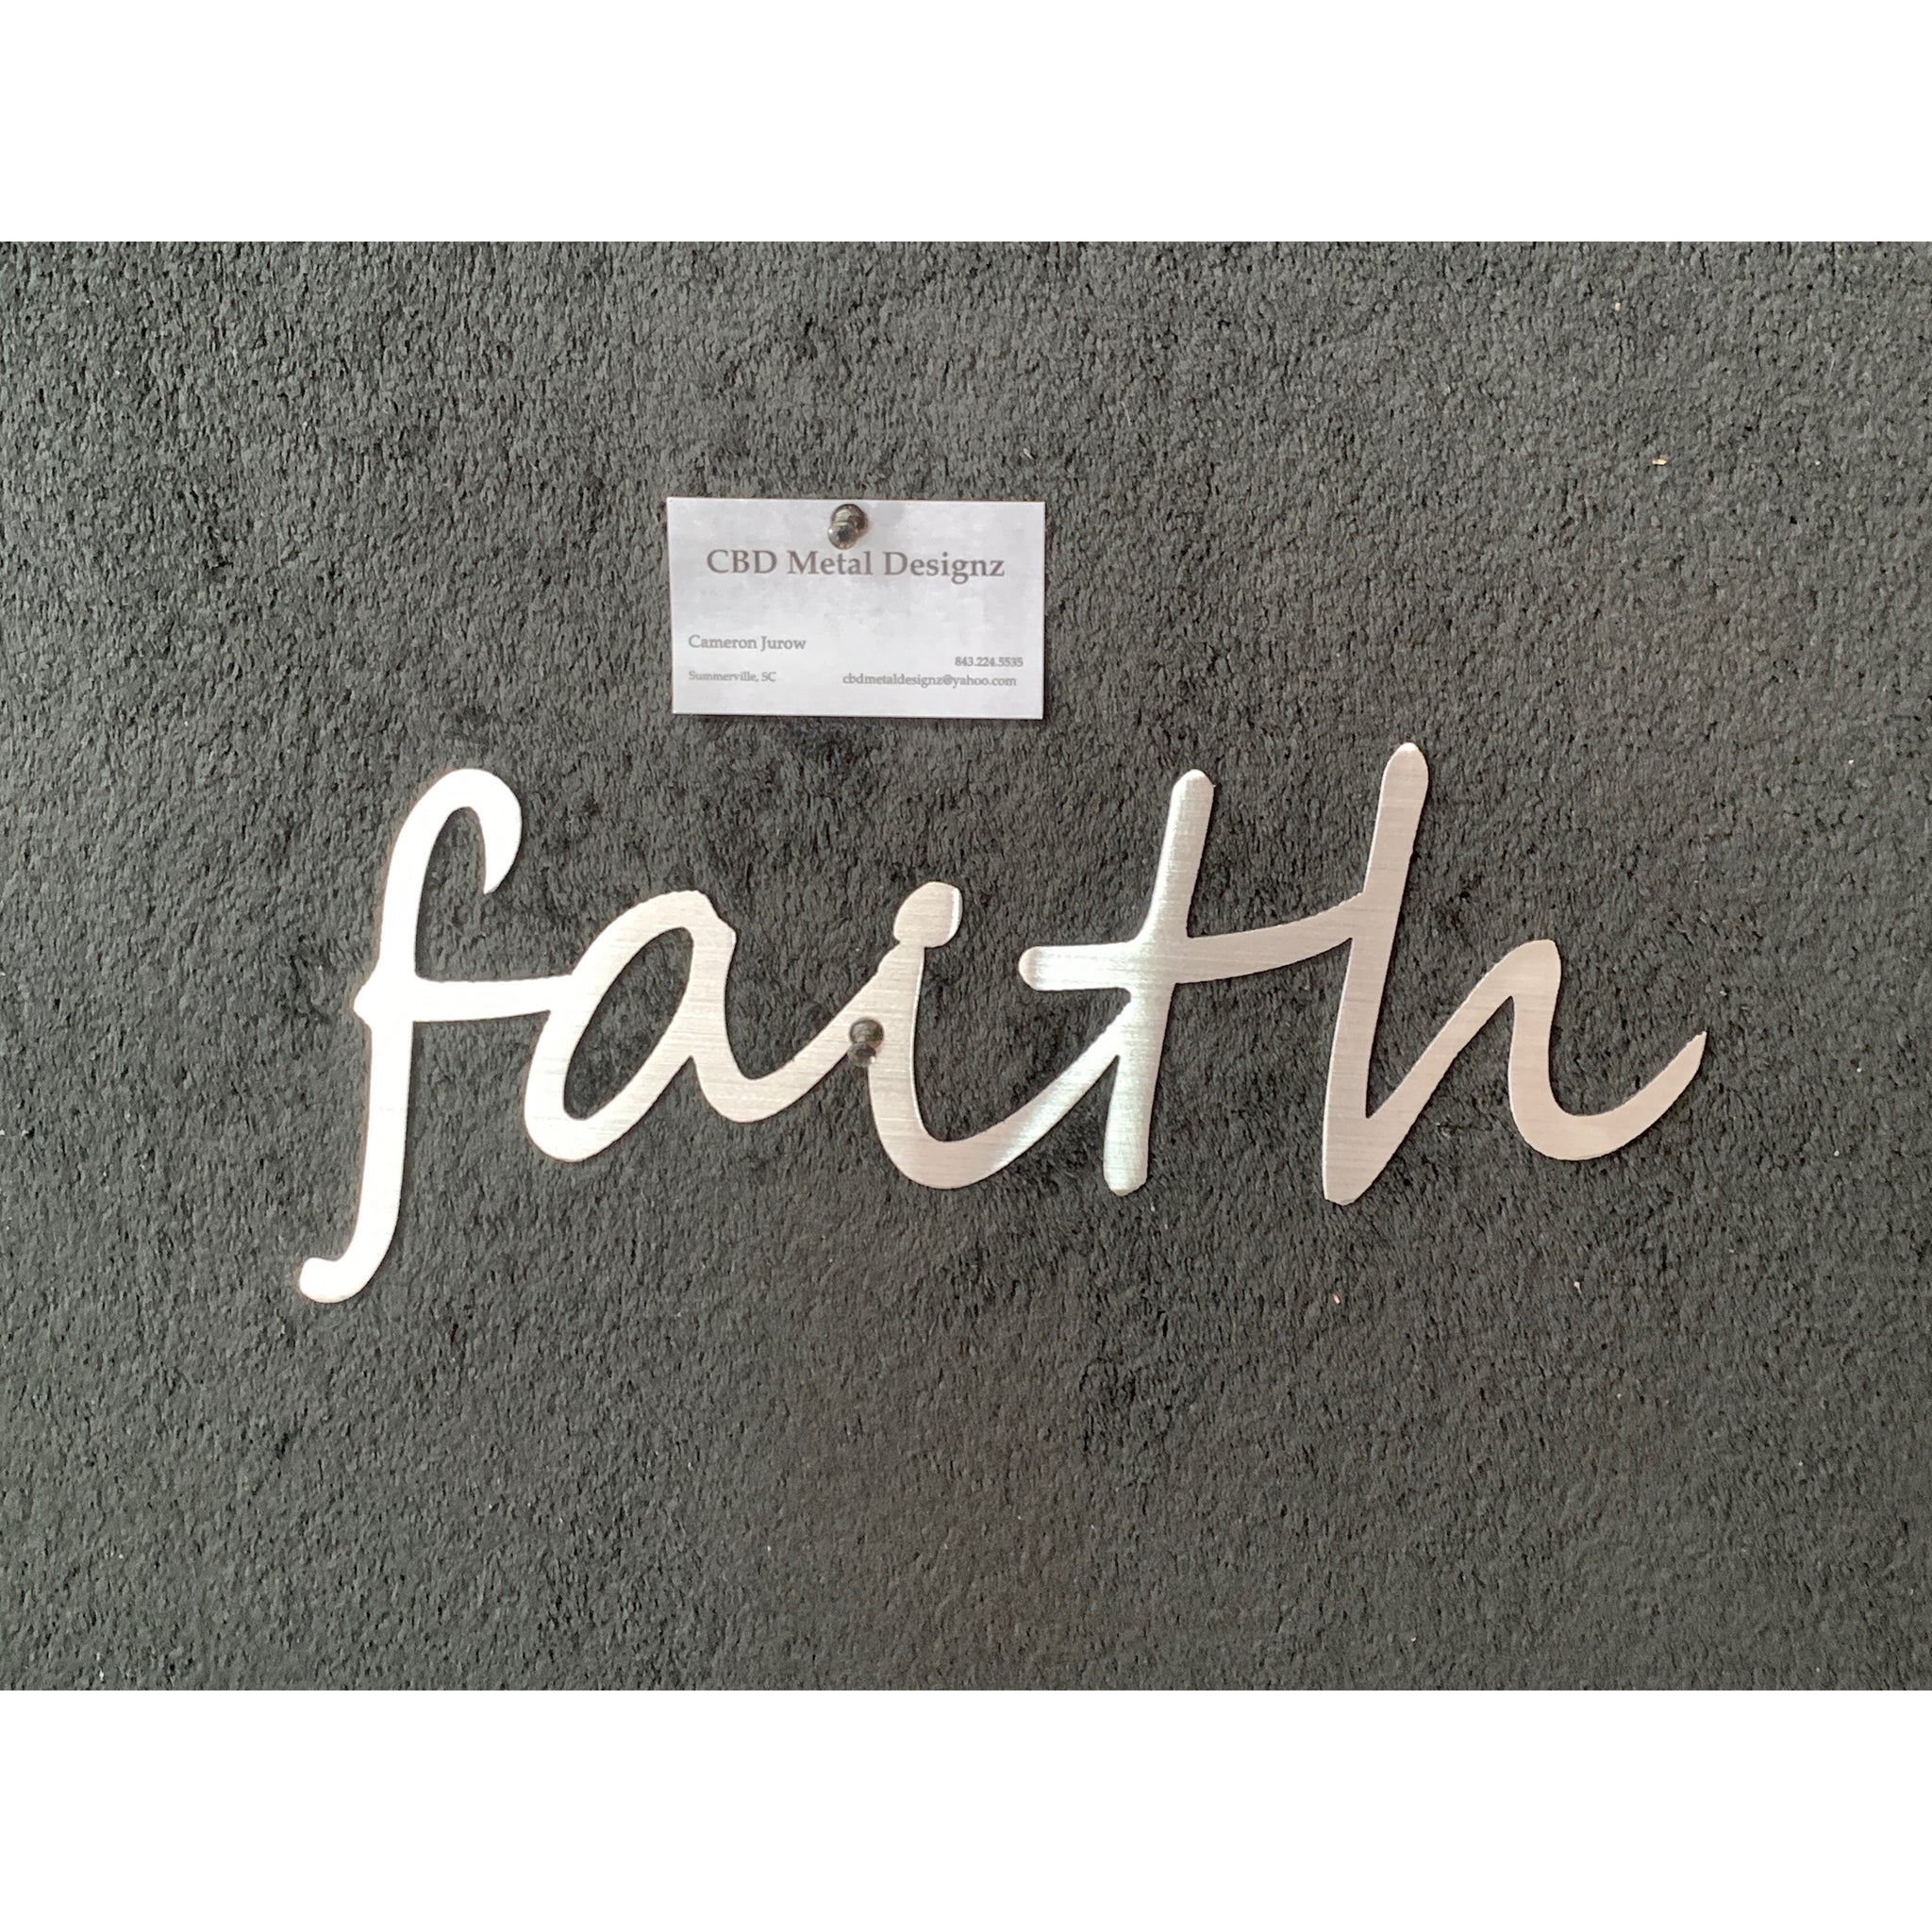 Faith / Love / Hope